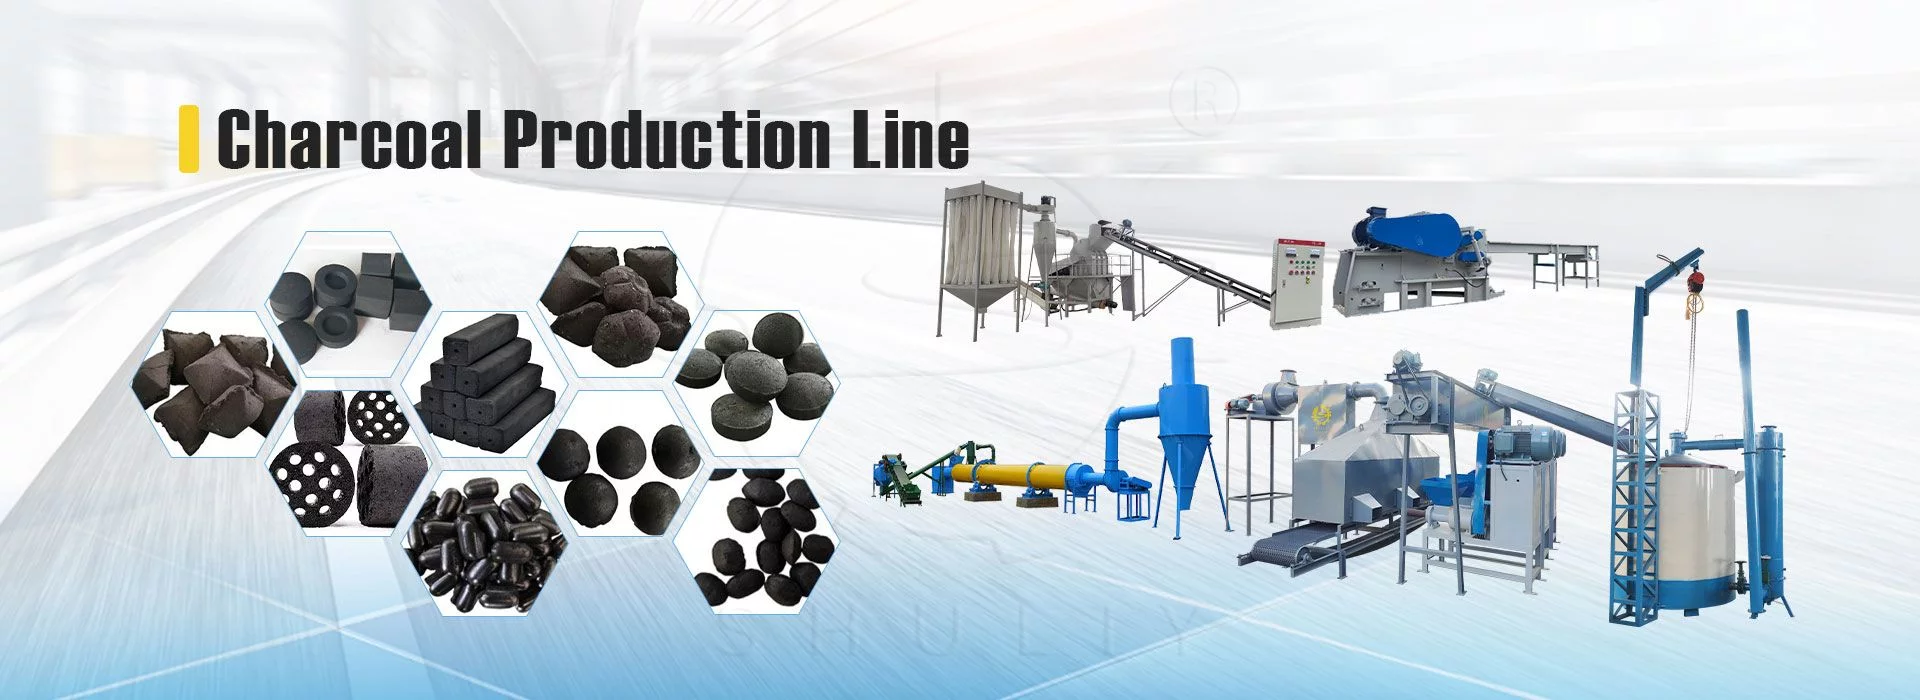 línea de producción de carbón